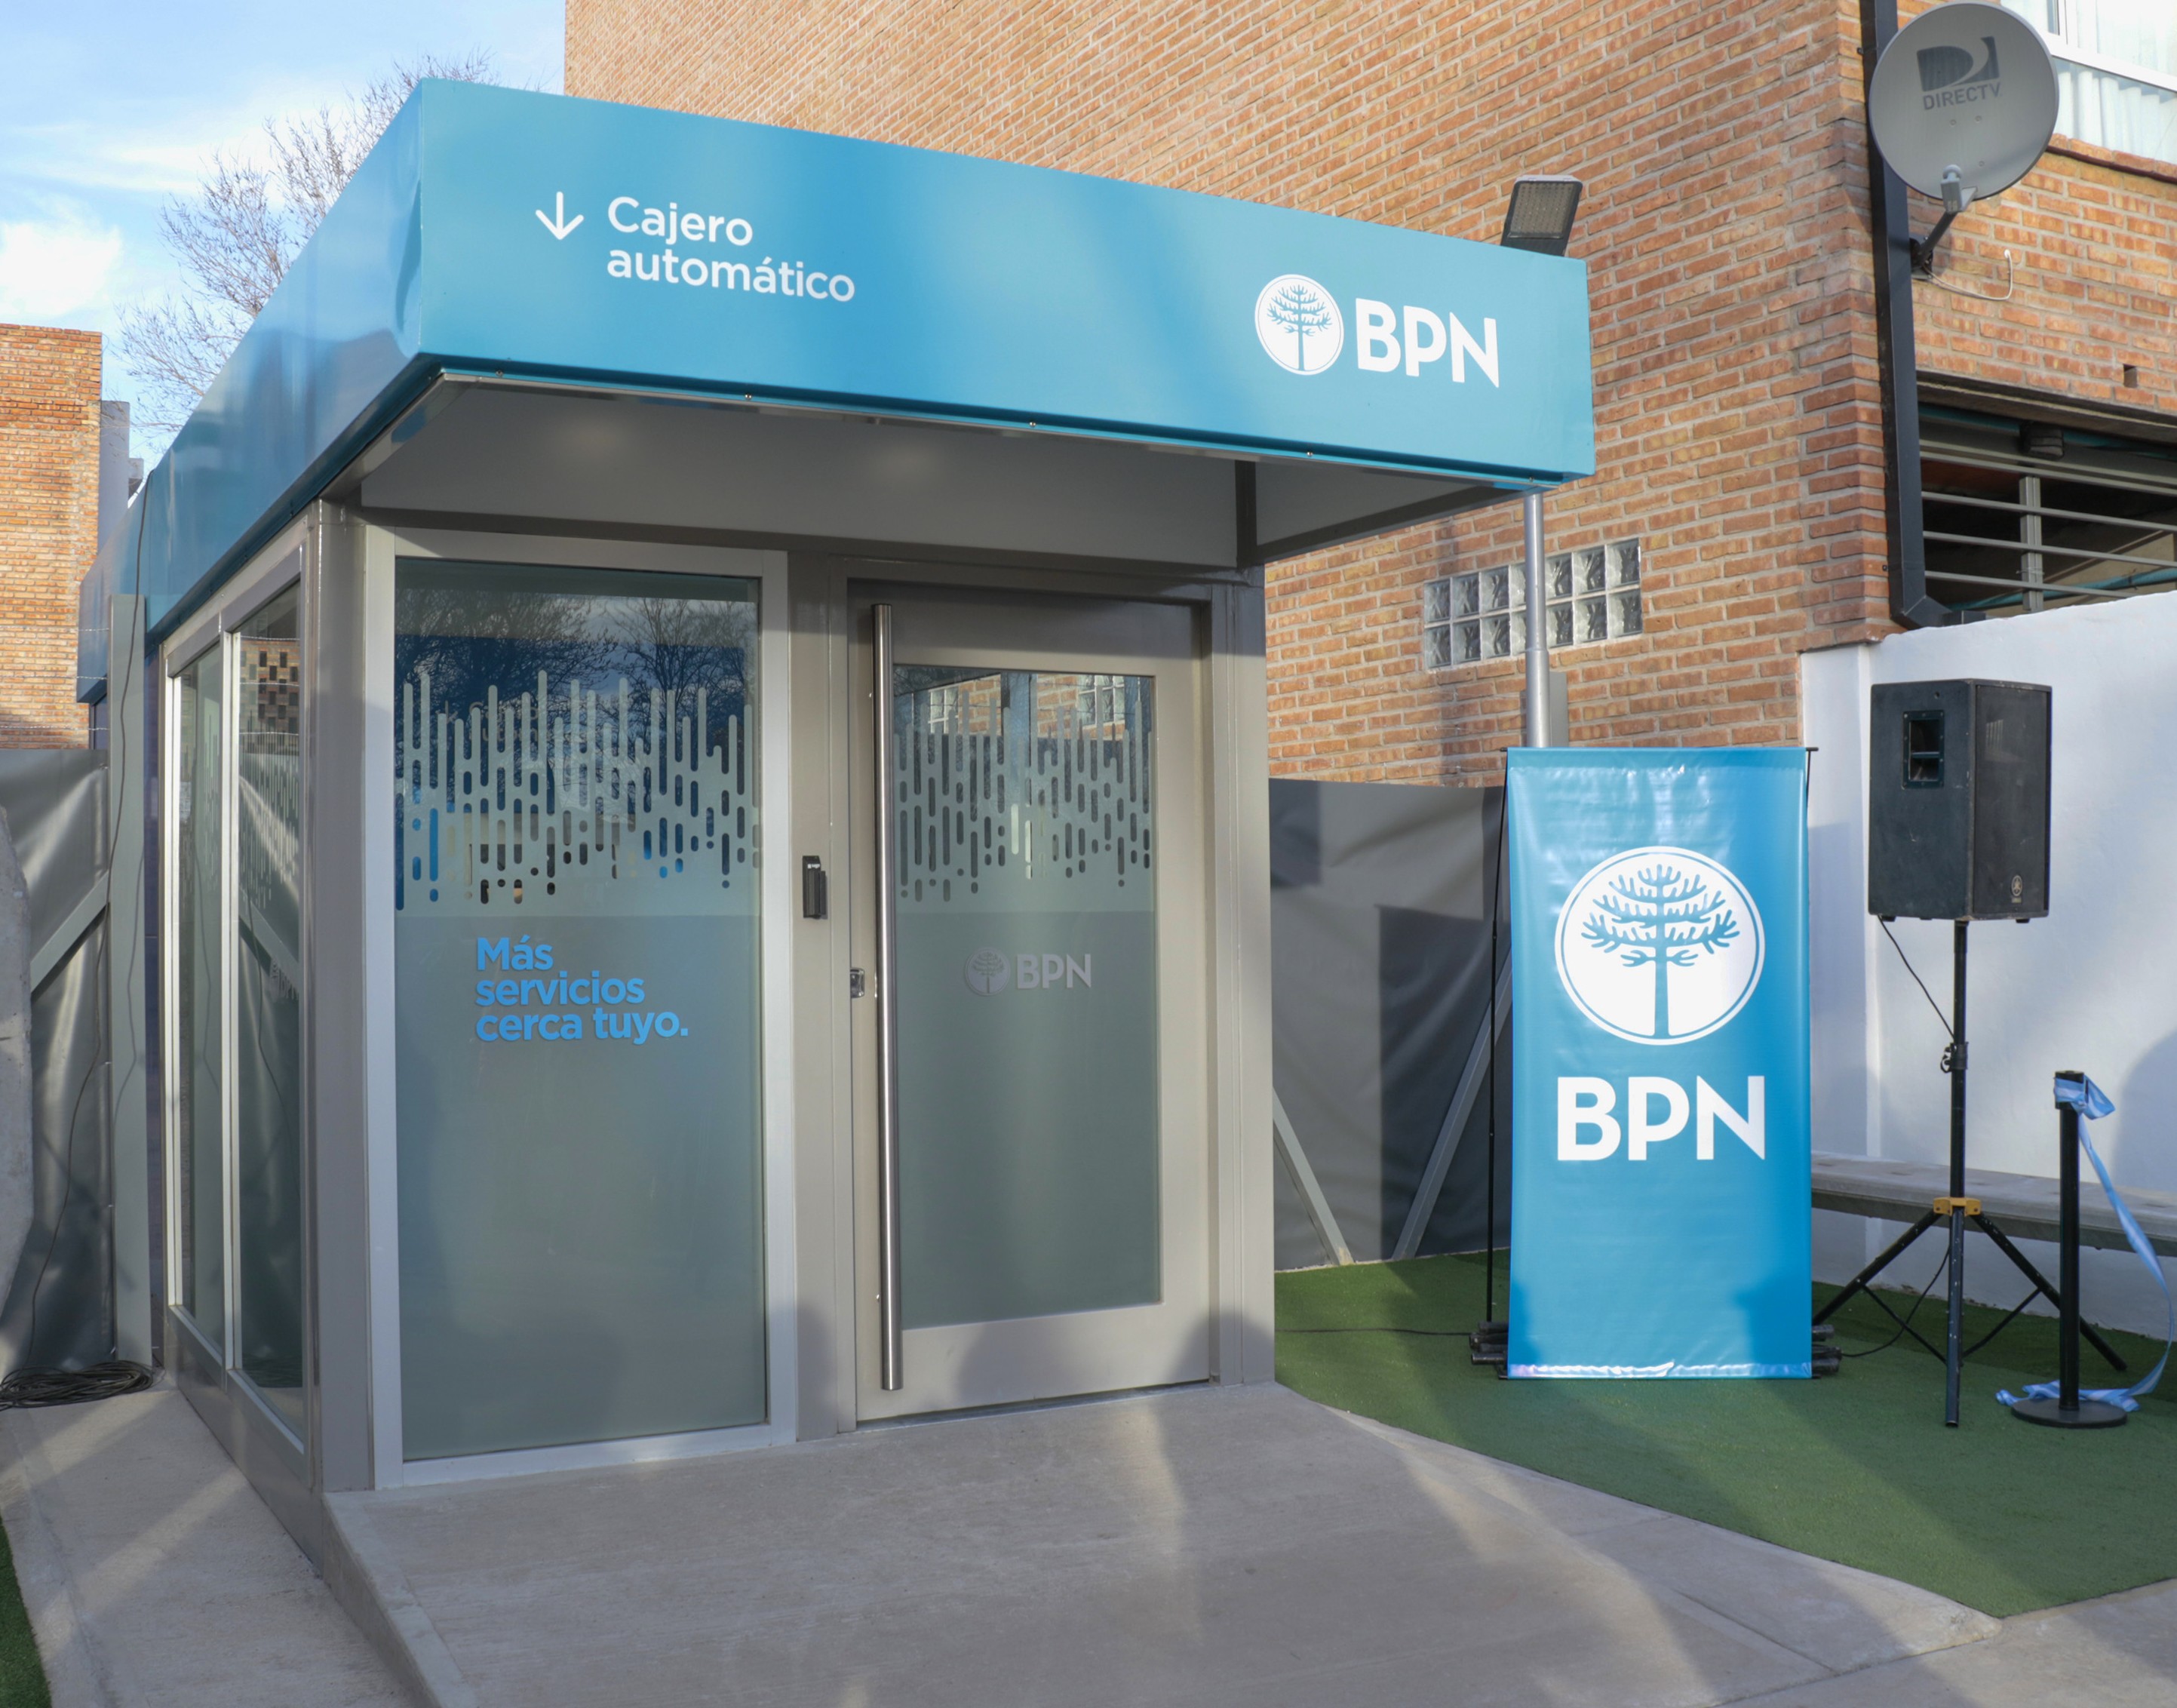 BPN - Nuestro Banco